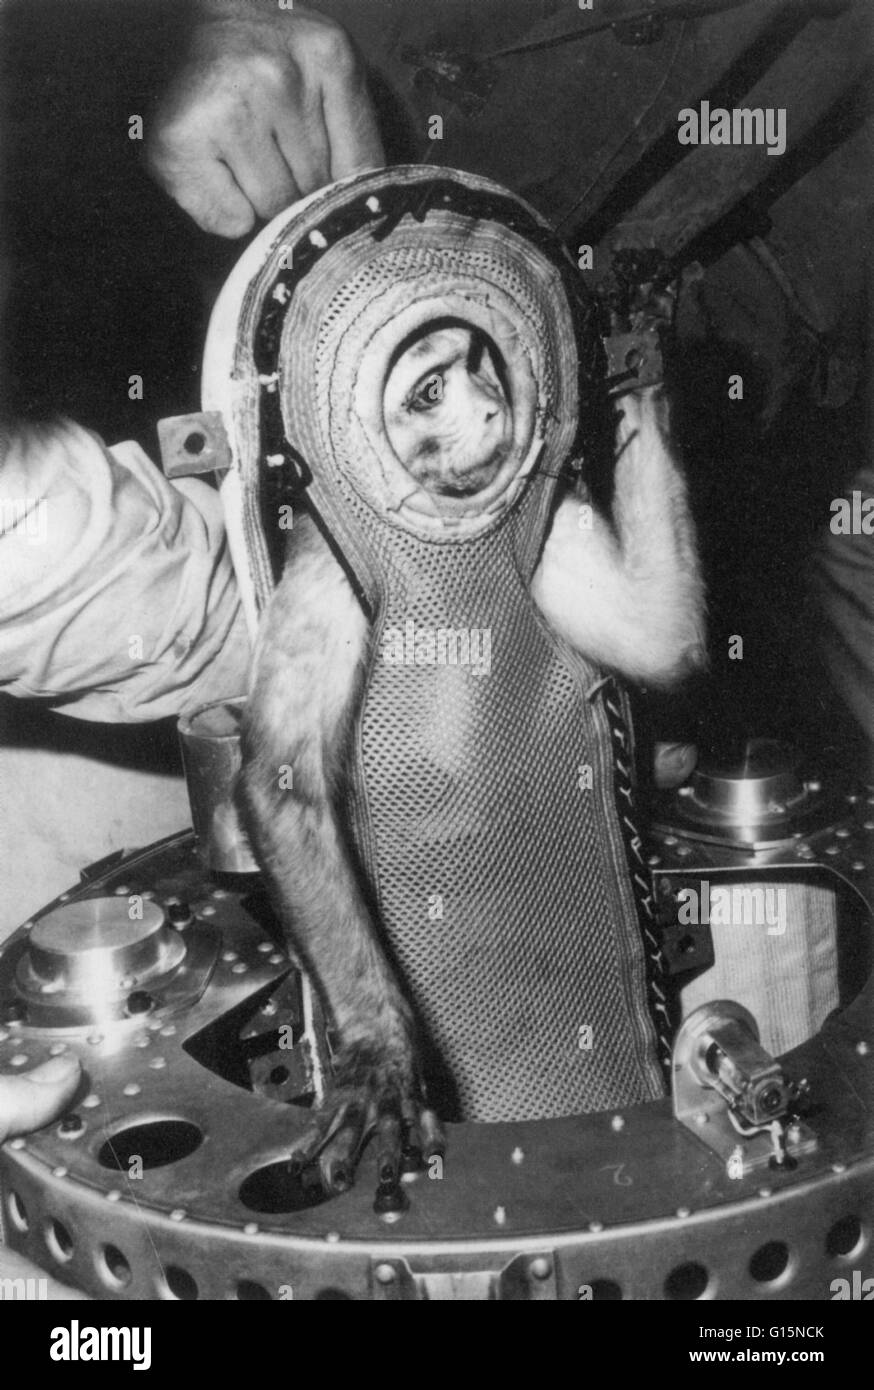 Sam, una scimmia rhesus che, il 4 dicembre 1959, ha volato su Little Joe 2 nel programma di mercurio a 53 miglia ad alta. Il Little Joe 2 era una prova del mercurio capsula spaziale e Sam è stata inviata per testare gli effetti negativi dello spazio su esseri umani. La scimmia restituito Foto Stock